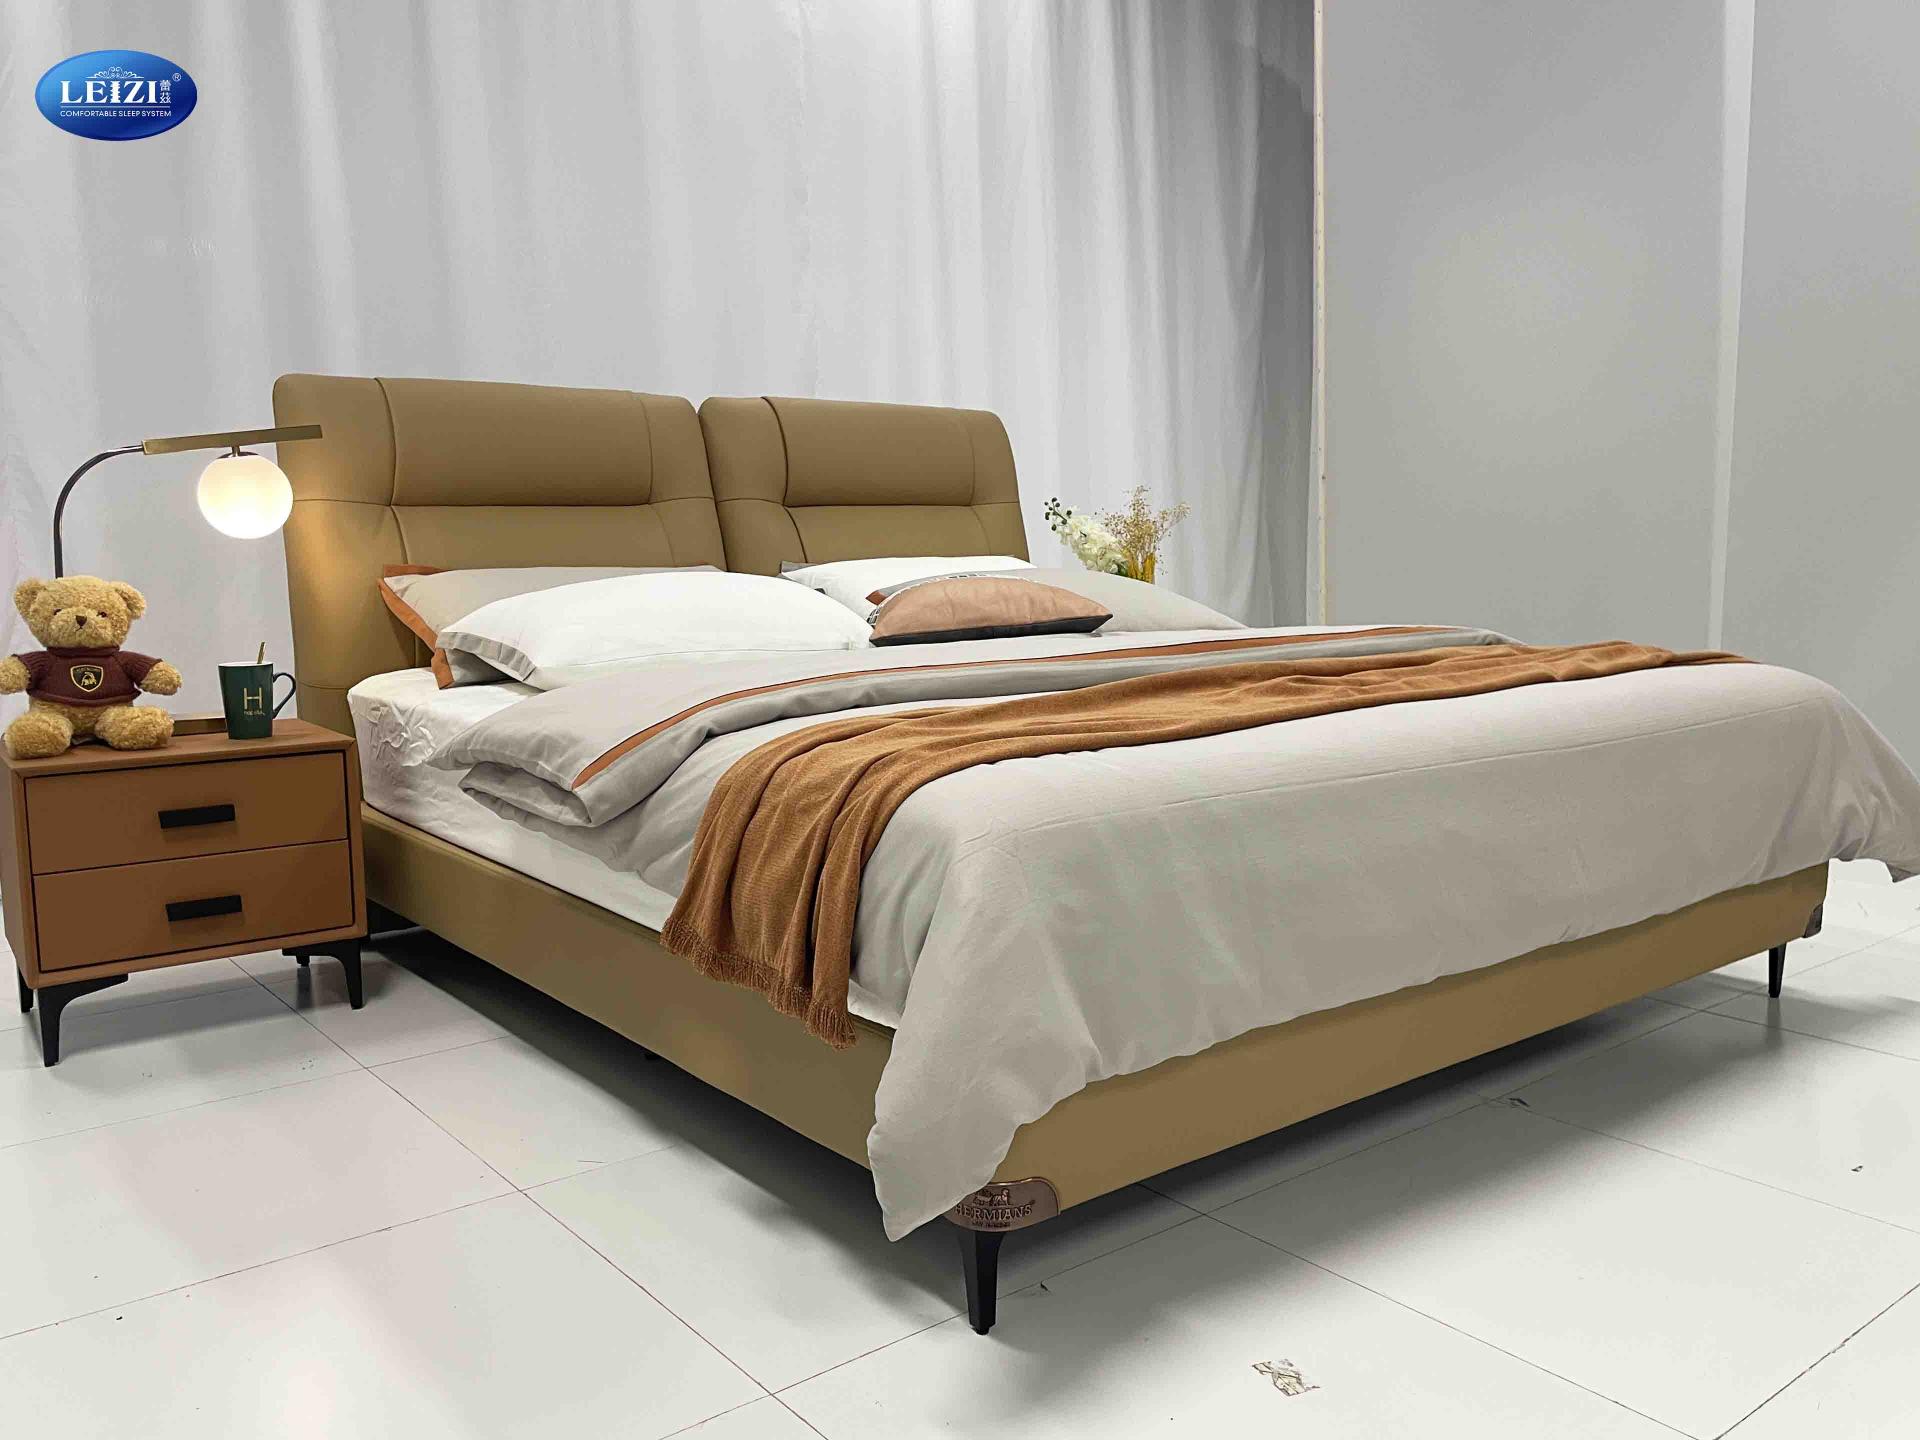 bed frame manufacturer leather upholstered bed